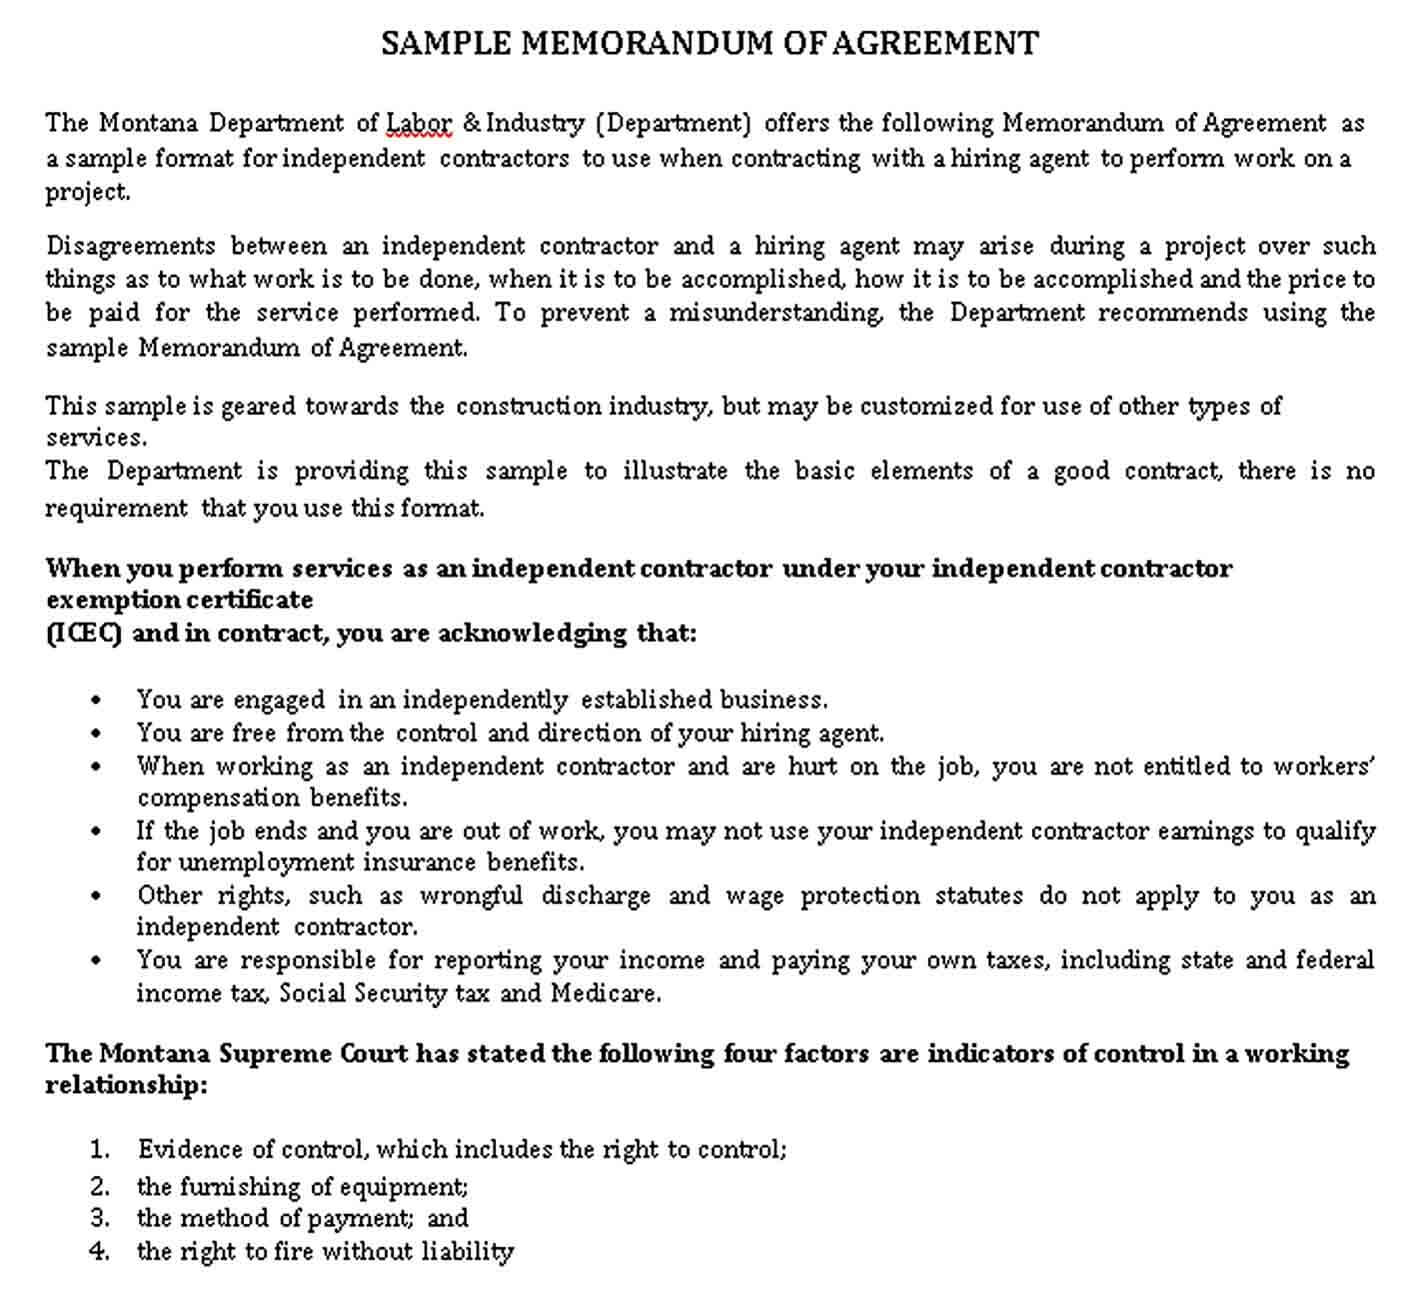 Sample sample memorandum of agreement